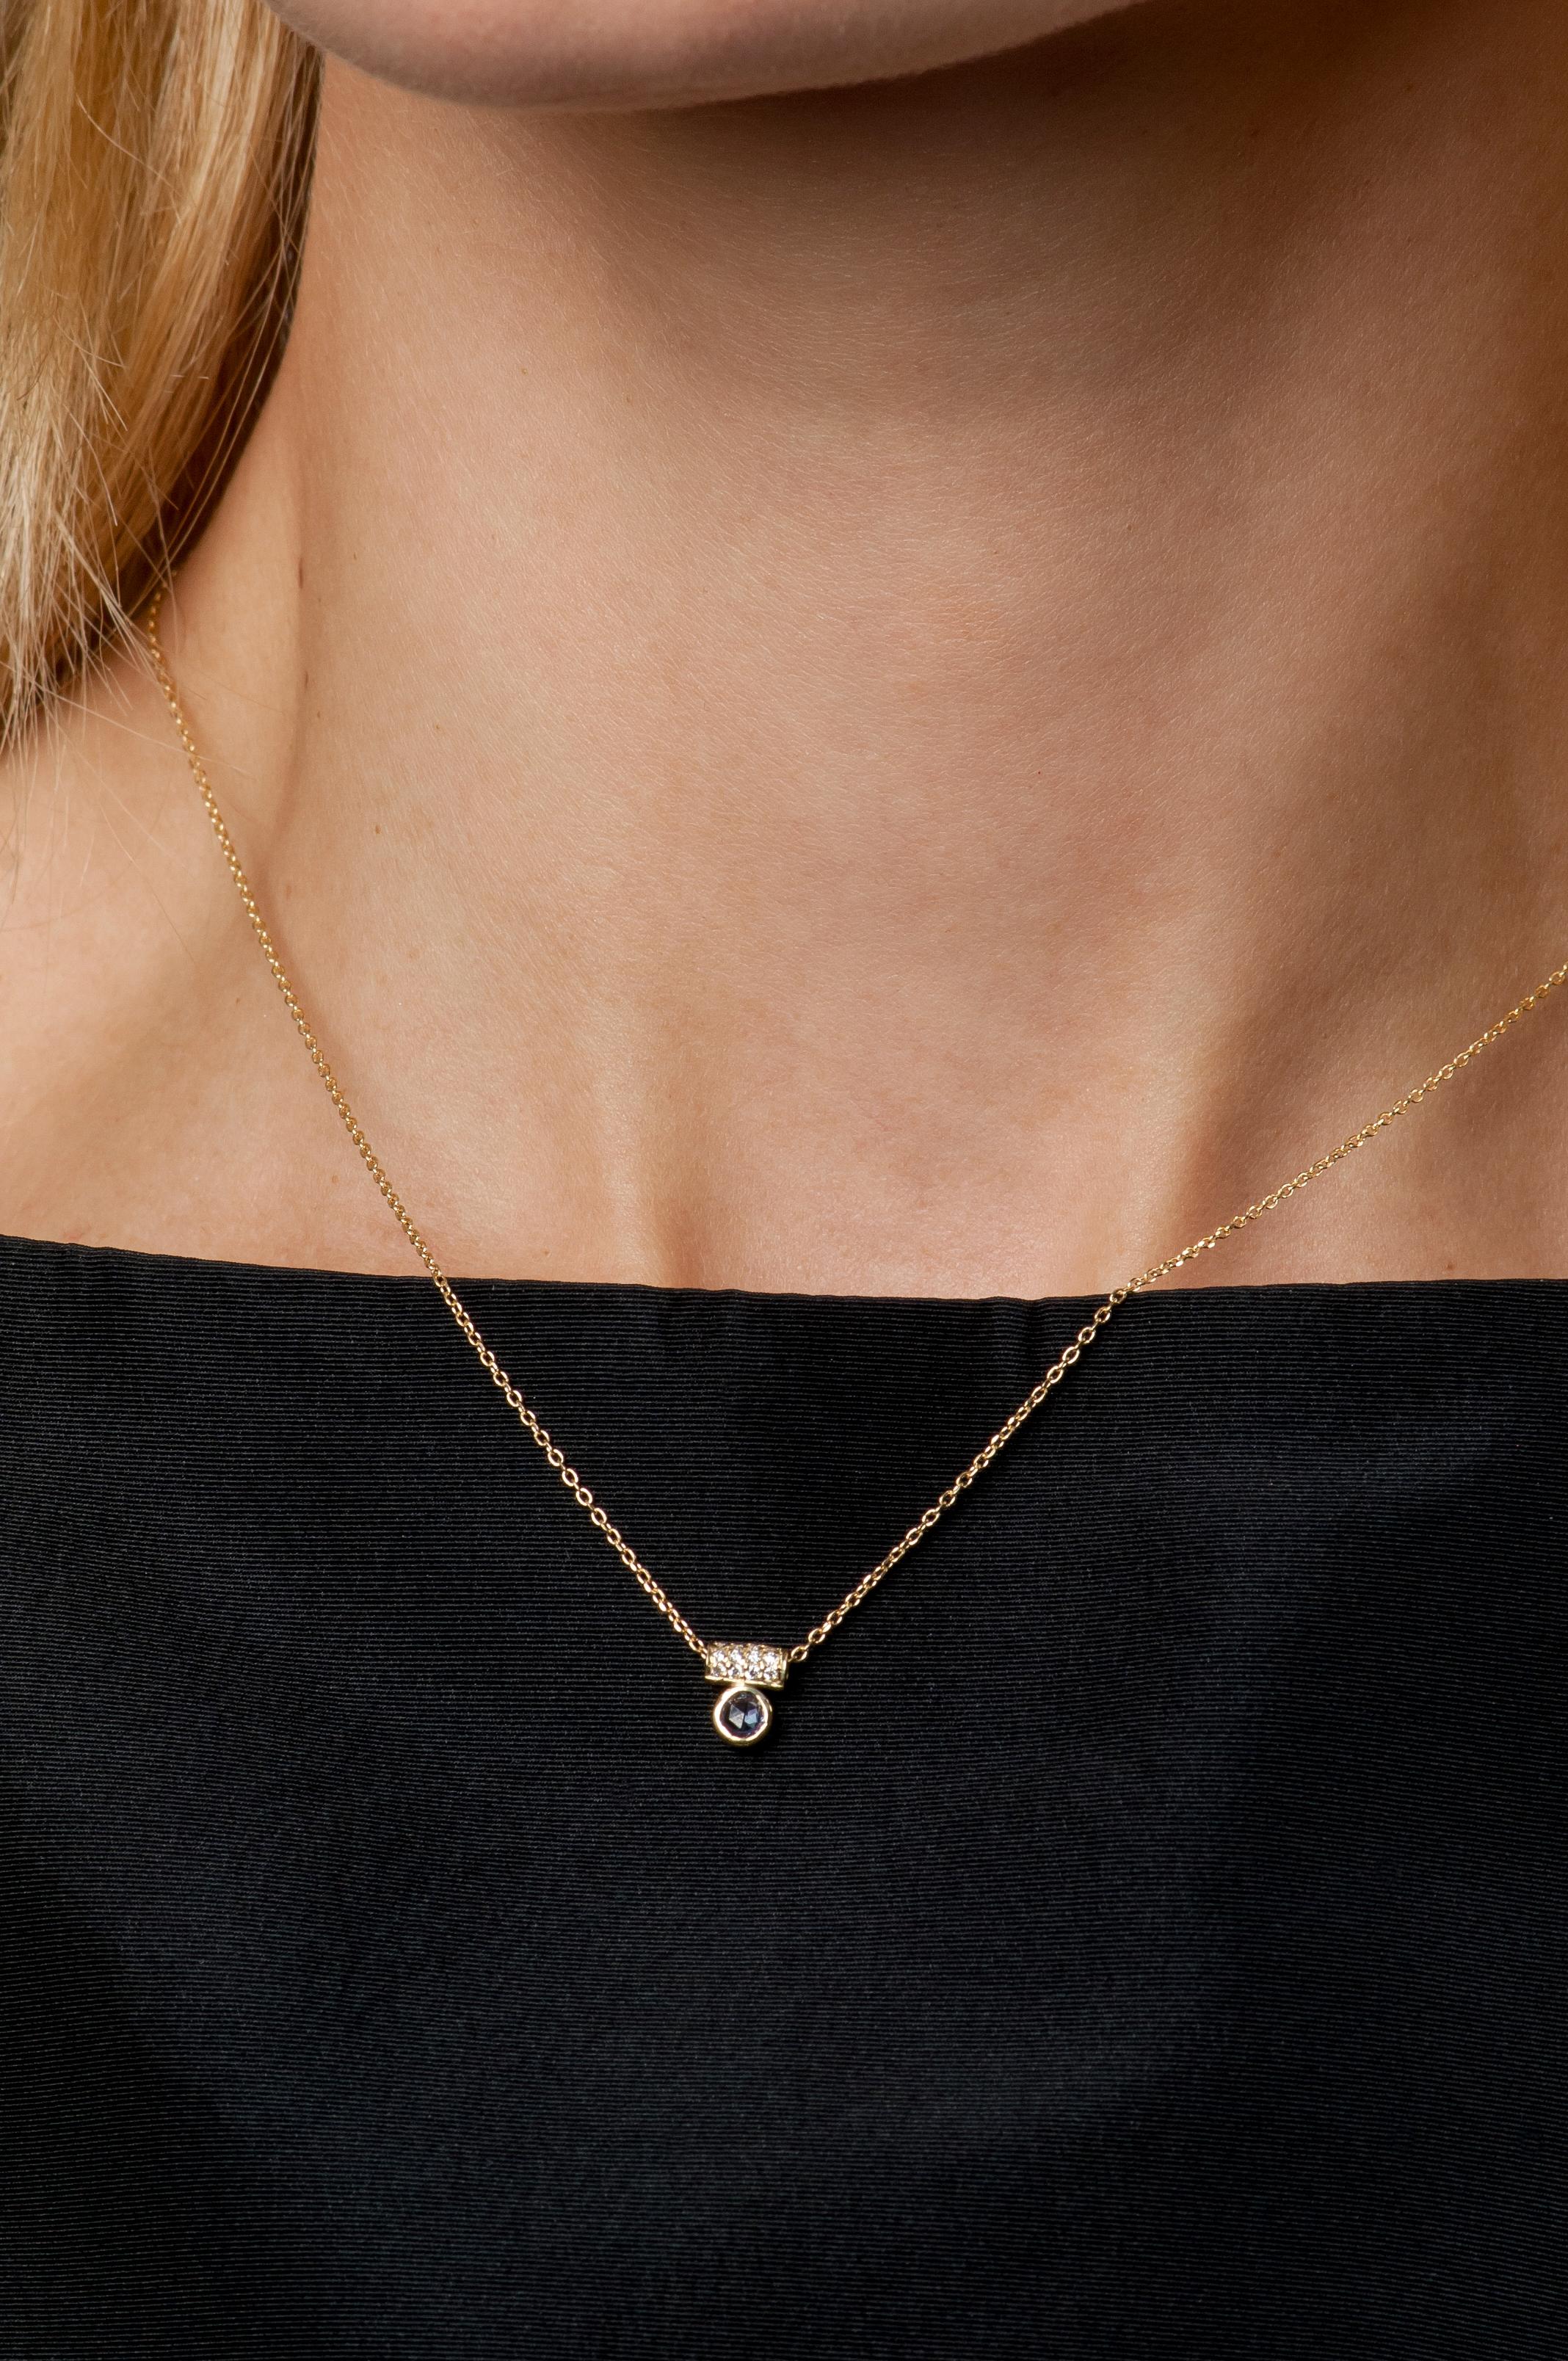 Ein blauer Saphir im Rosenschliff schwebt unter einer diamantbesetzten Röhre auf dieser zarten Halskette. Perfekt zum Kombinieren mit anderen Lieblingsstücken.

18K Gelbgold Kette mit 0,14 Zoll Lünette gesetzt blauen Saphir
Diamant-Röhrenanhänger in